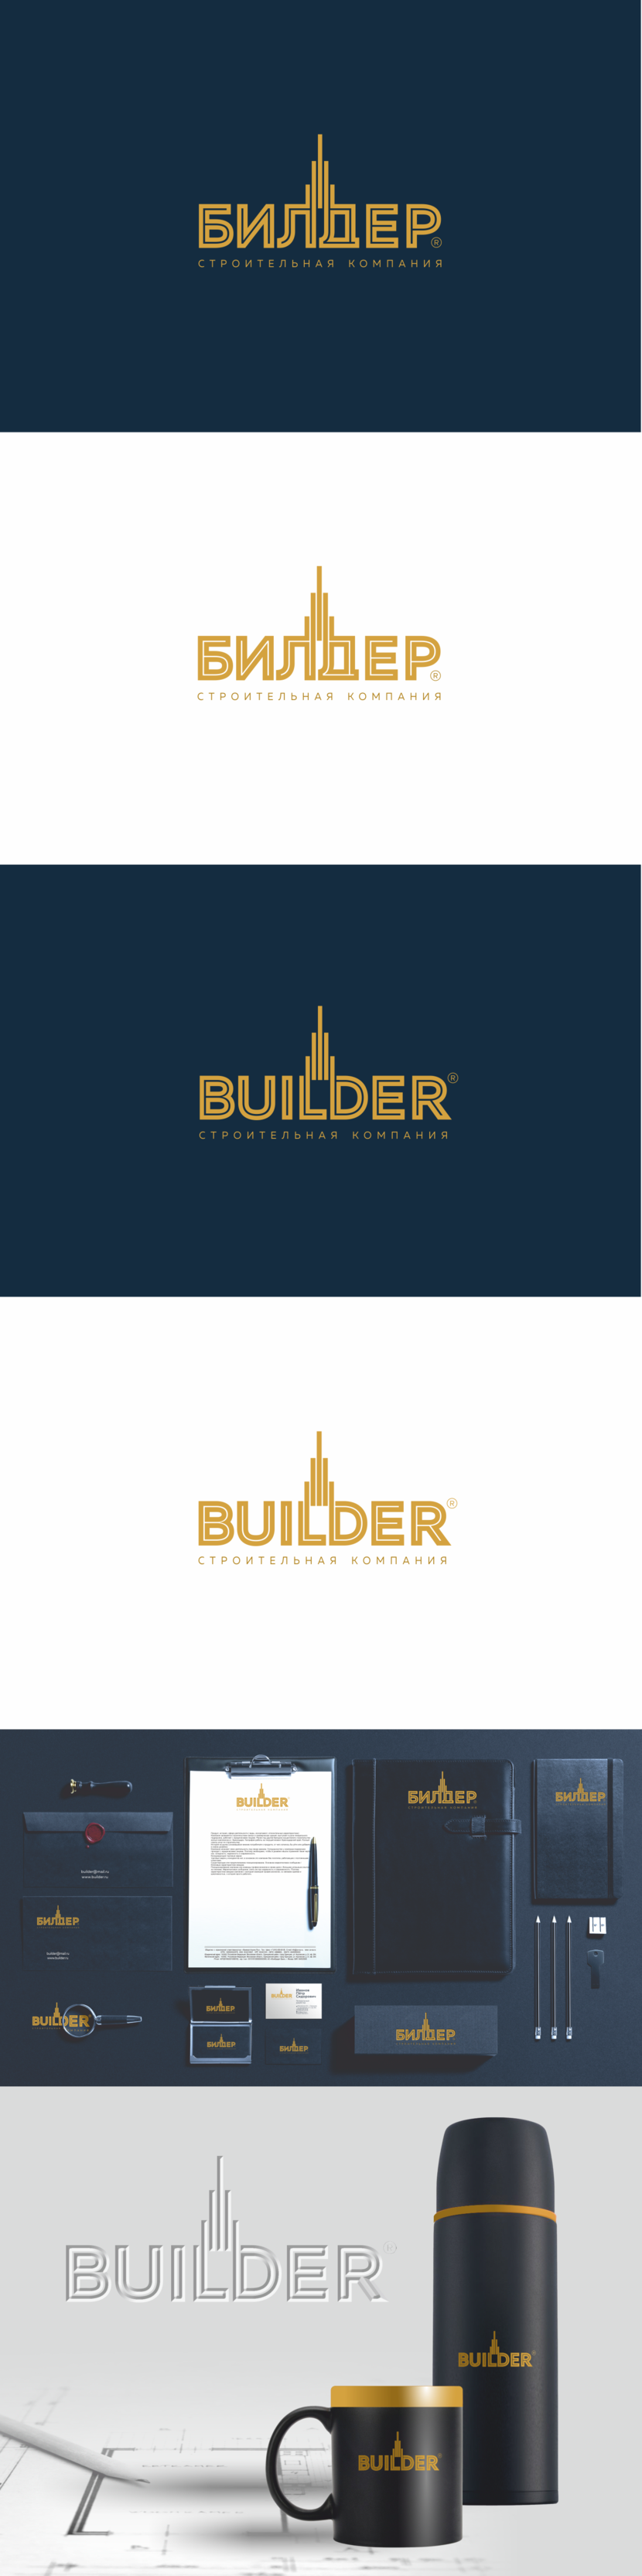 Логотип и фирменный стиль для строительной компании